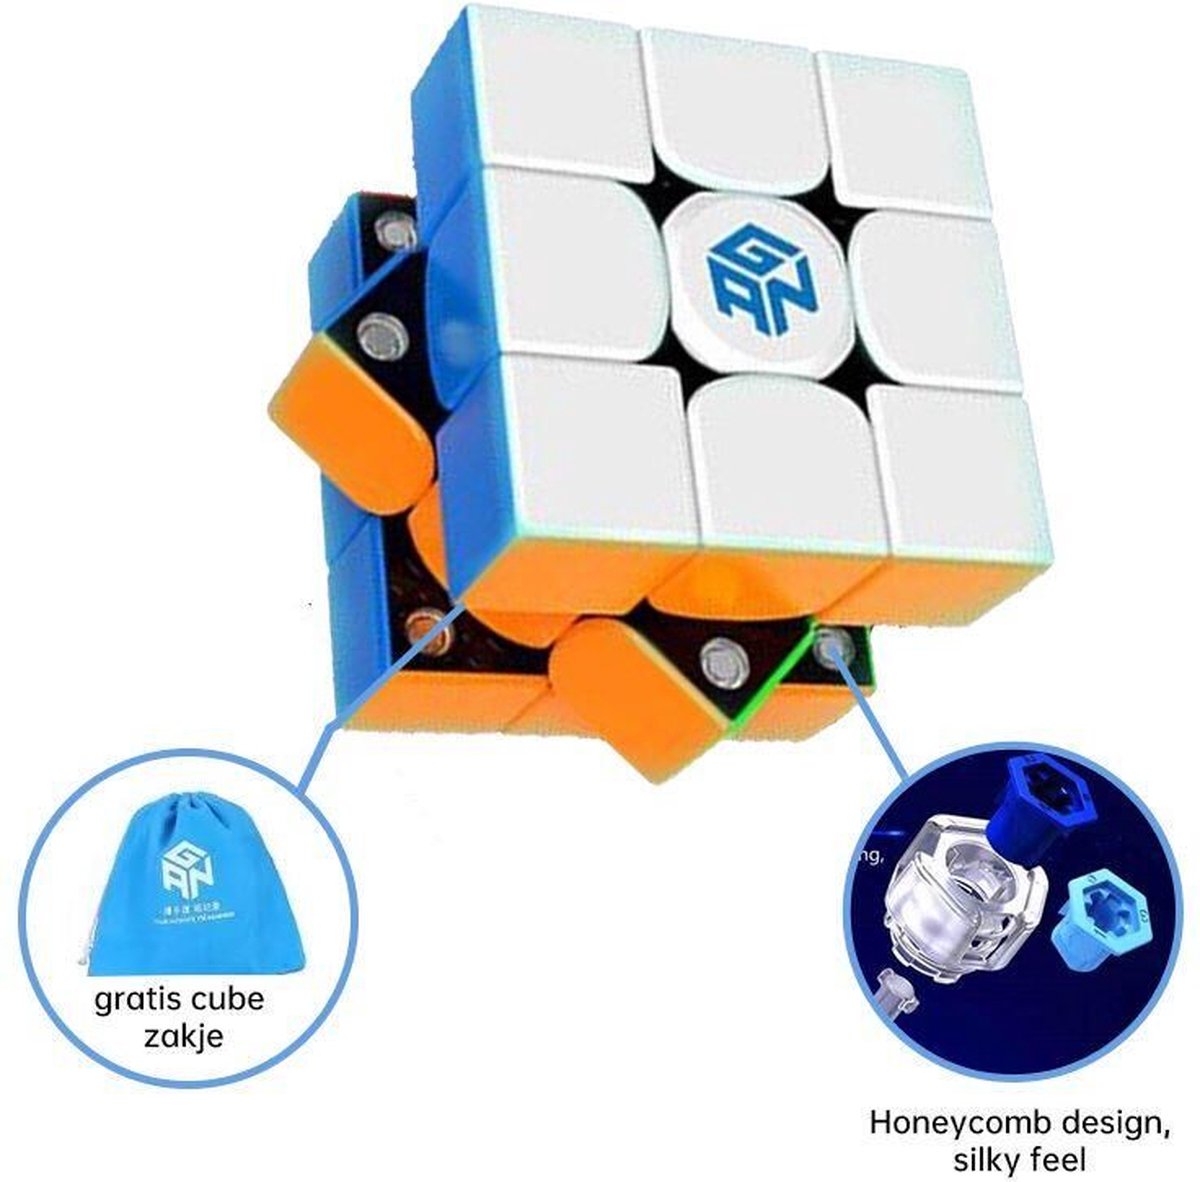 GAN Speed Cube - GAN356 X - 3x3 - Magnetisch - GAN